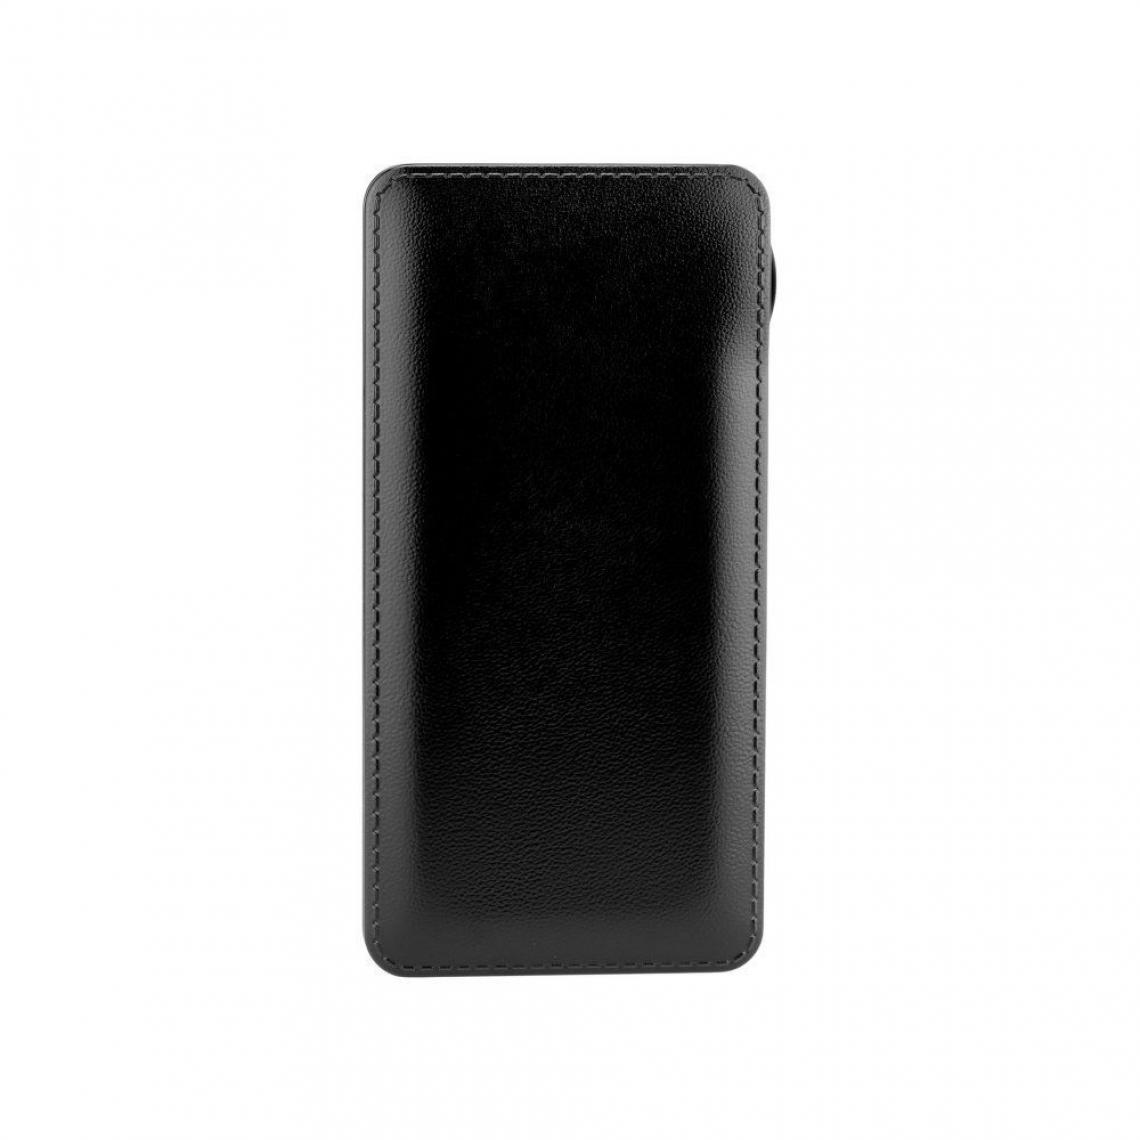 Ozzzo - Chargeur batterie externe 30000 mAh powerbank ozzzo noir pour UMiDIGI S5 Pro - Autres accessoires smartphone